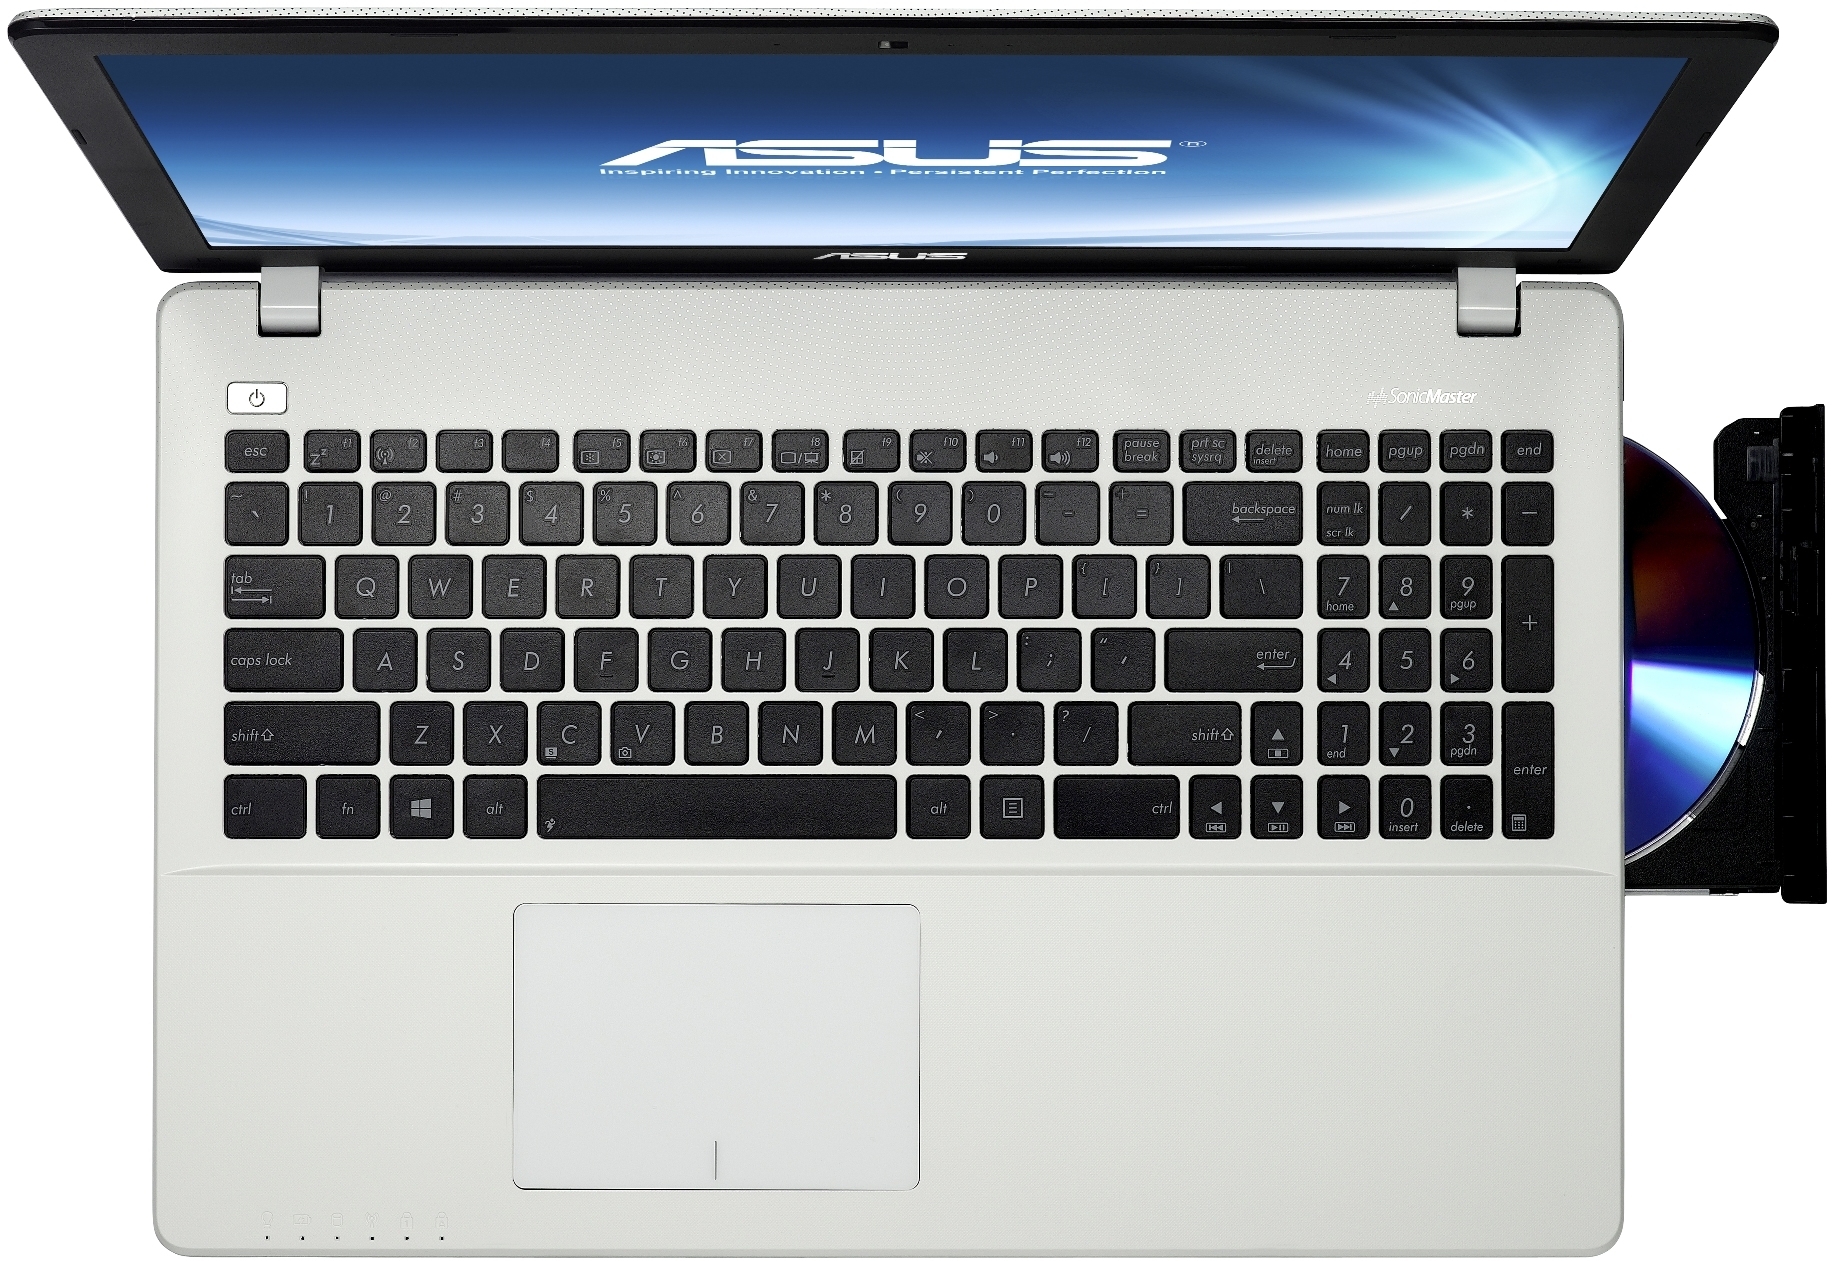 Купить Ноутбук Asus X550ca Купить